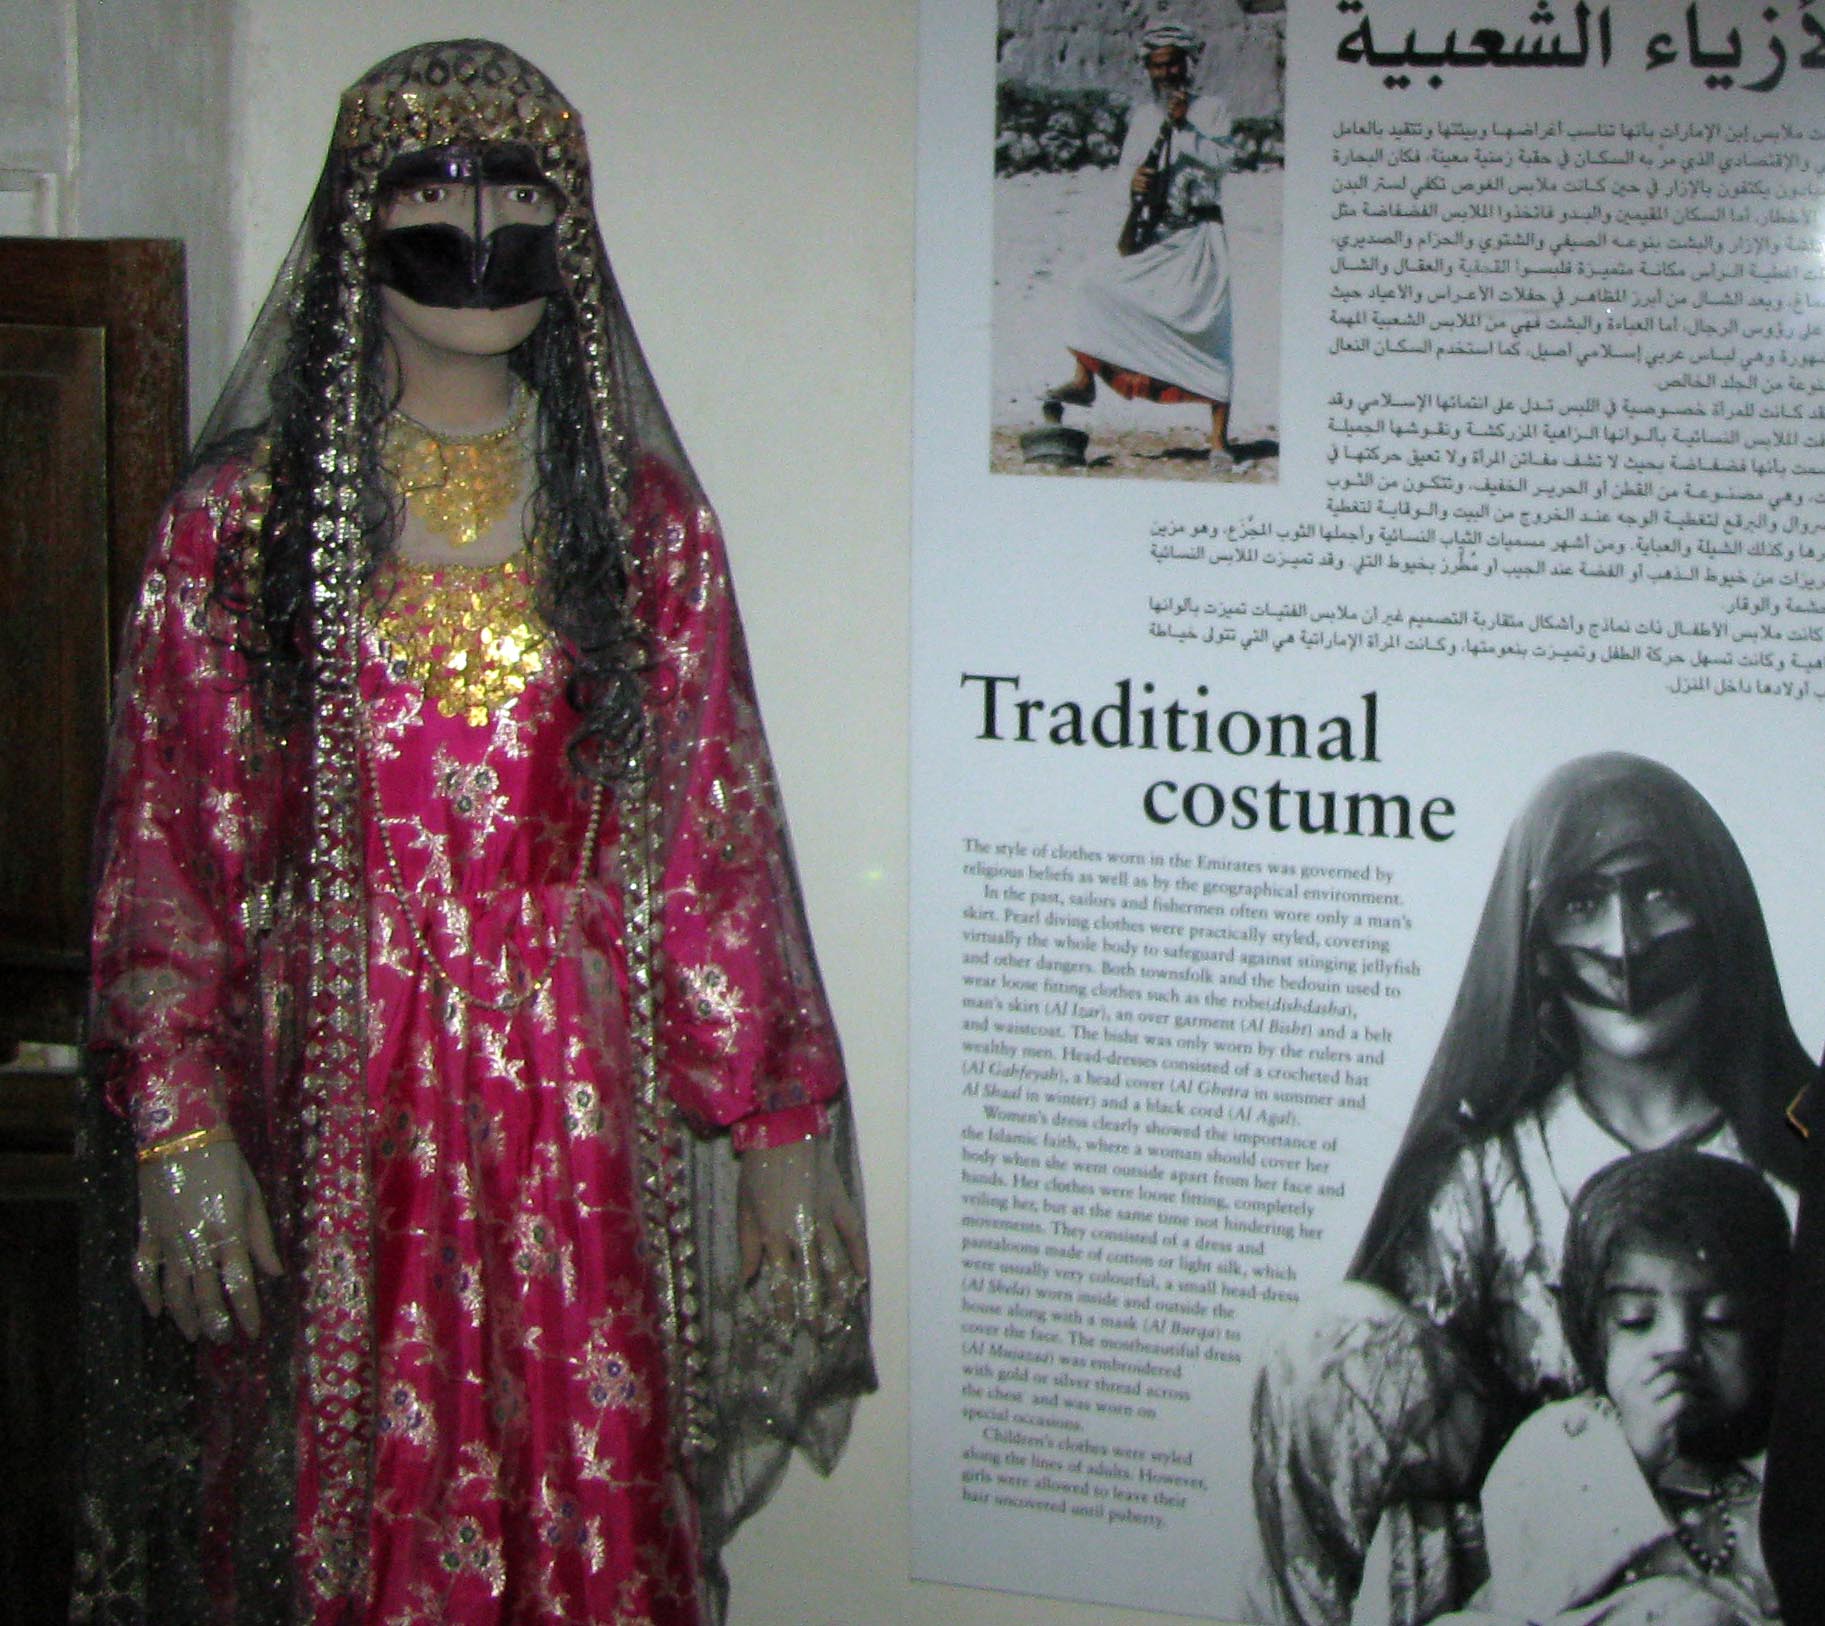 In the Dubai Museum